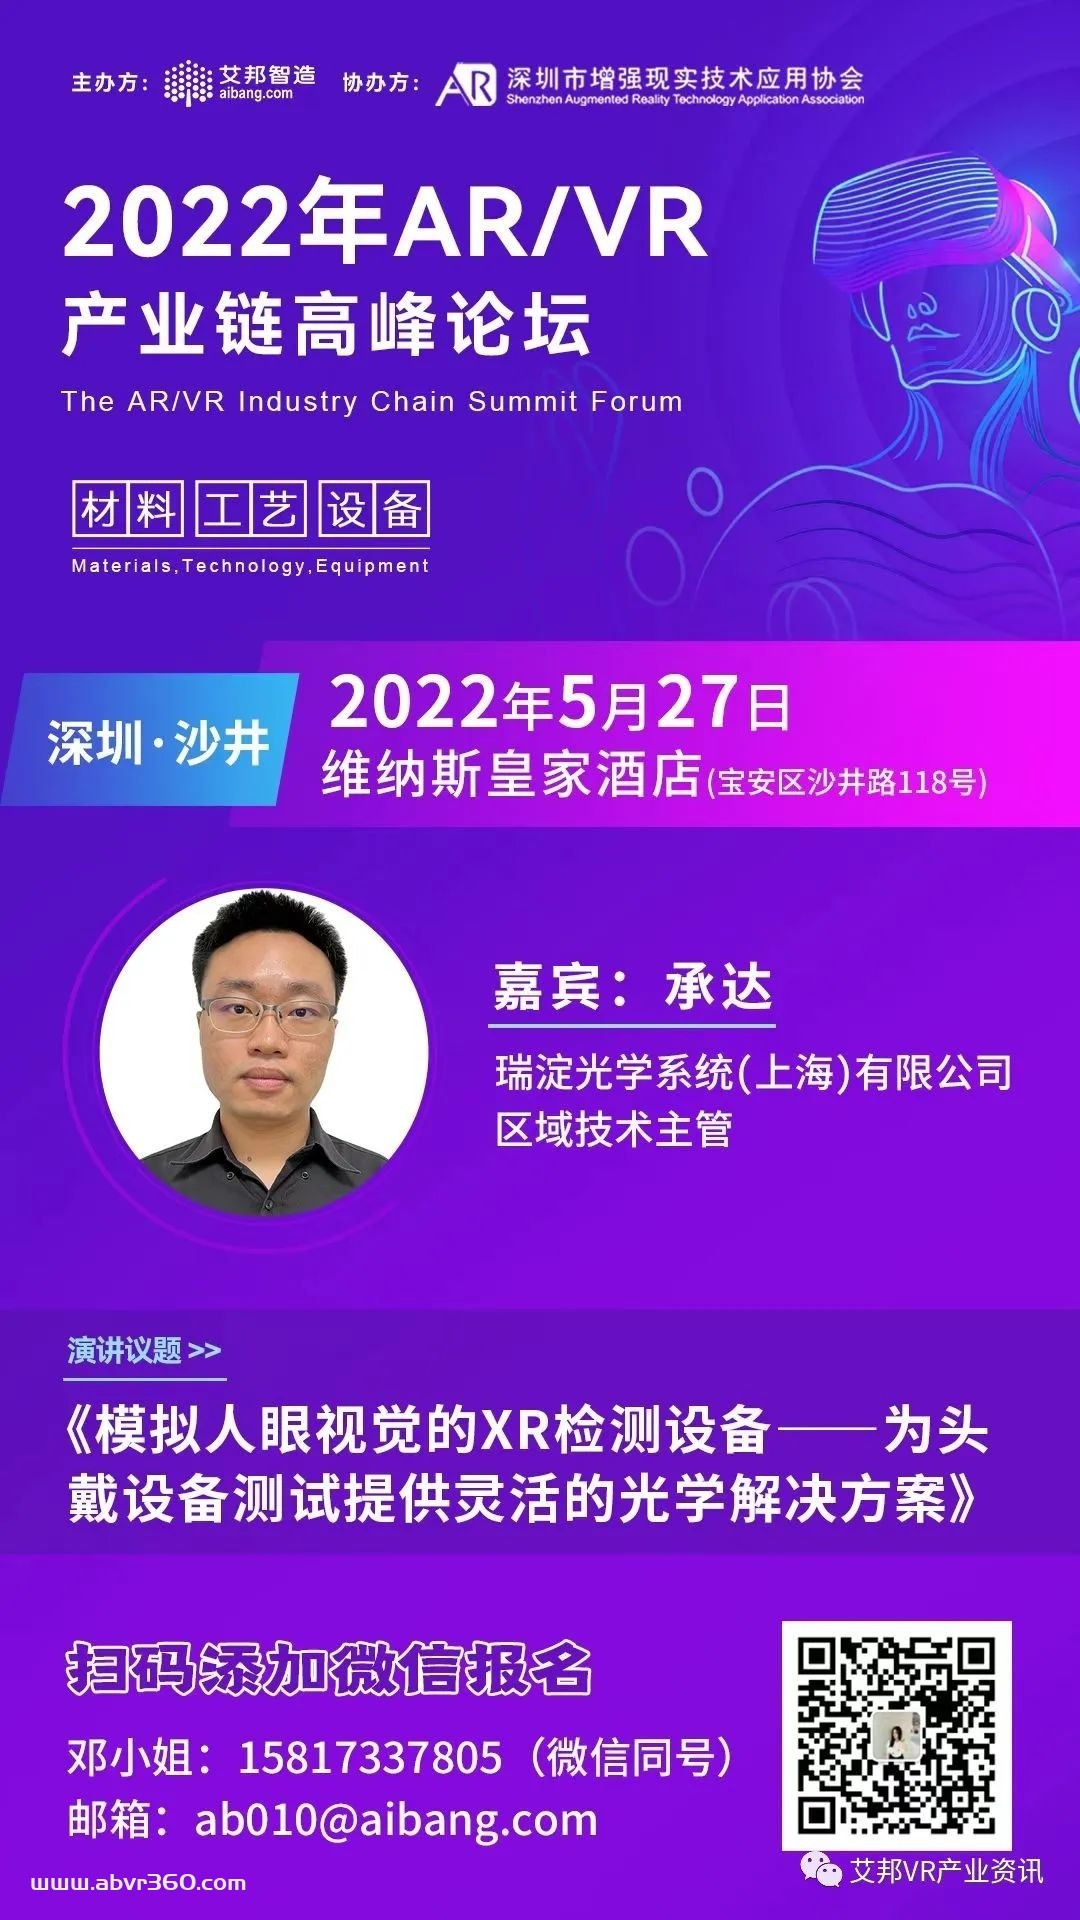 瑞淀光学将参与5月27日深圳AR/VR高峰论坛